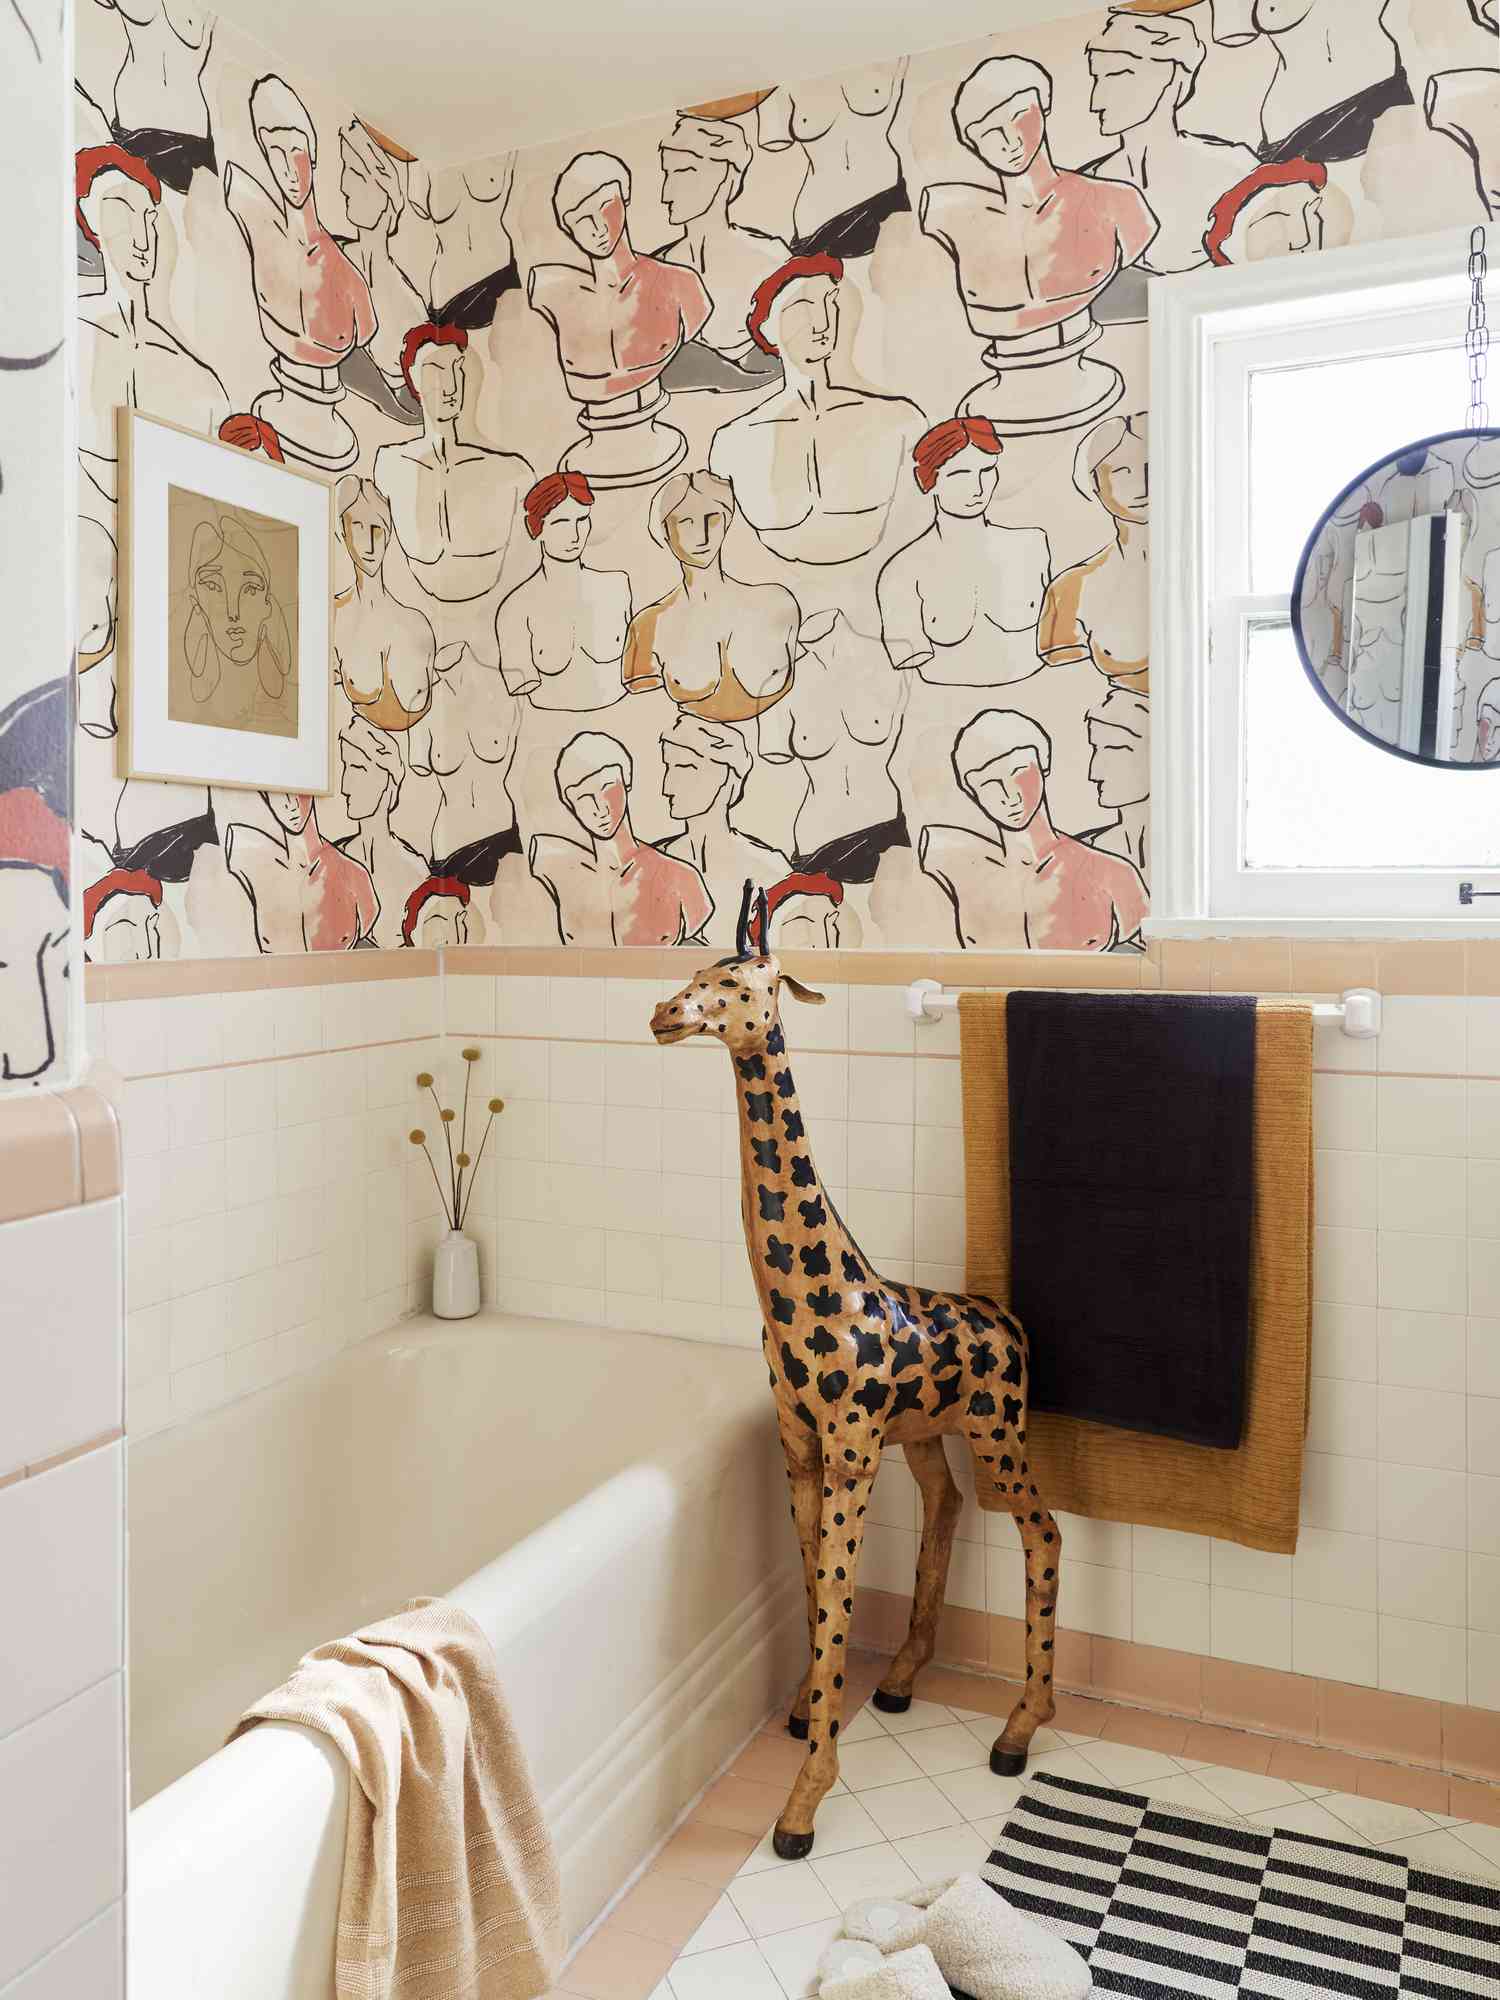 Ein Badezimmer ist mit einer Wandmalerei bedeckt, die aus klassischen Büsten in nackten Farben wie Pfirsich und Braun besteht